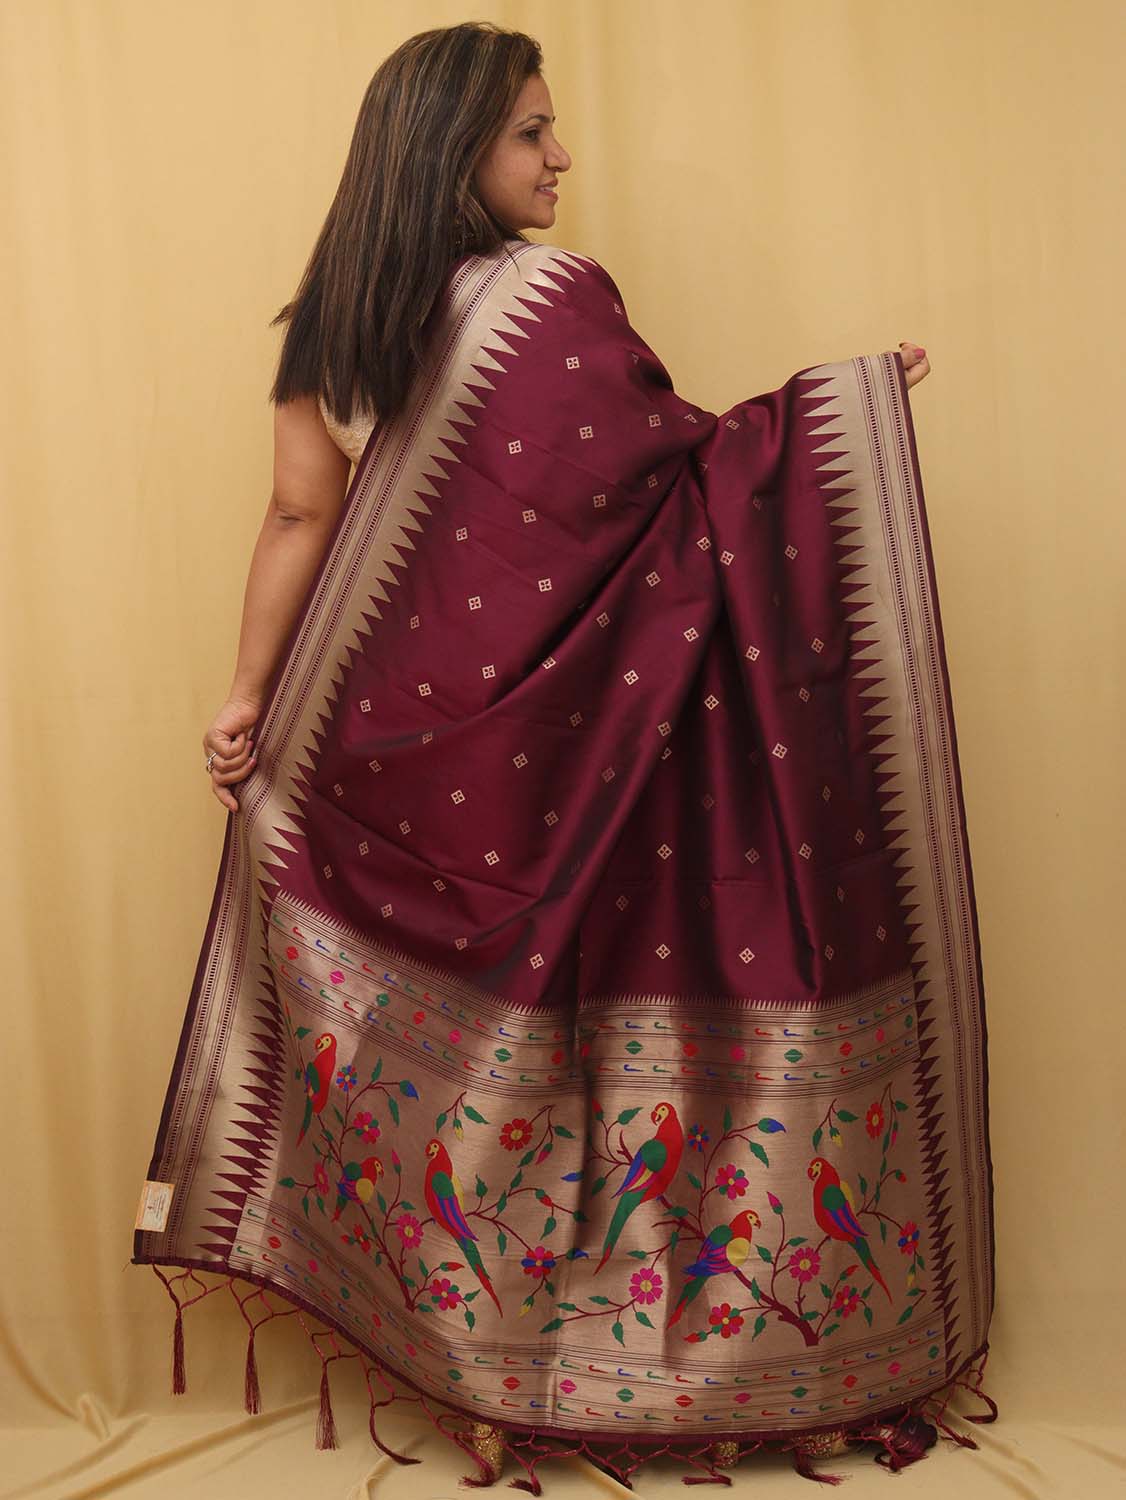 Stunning Maroon Paithani Silk Dupatta with Bird & Floral Design